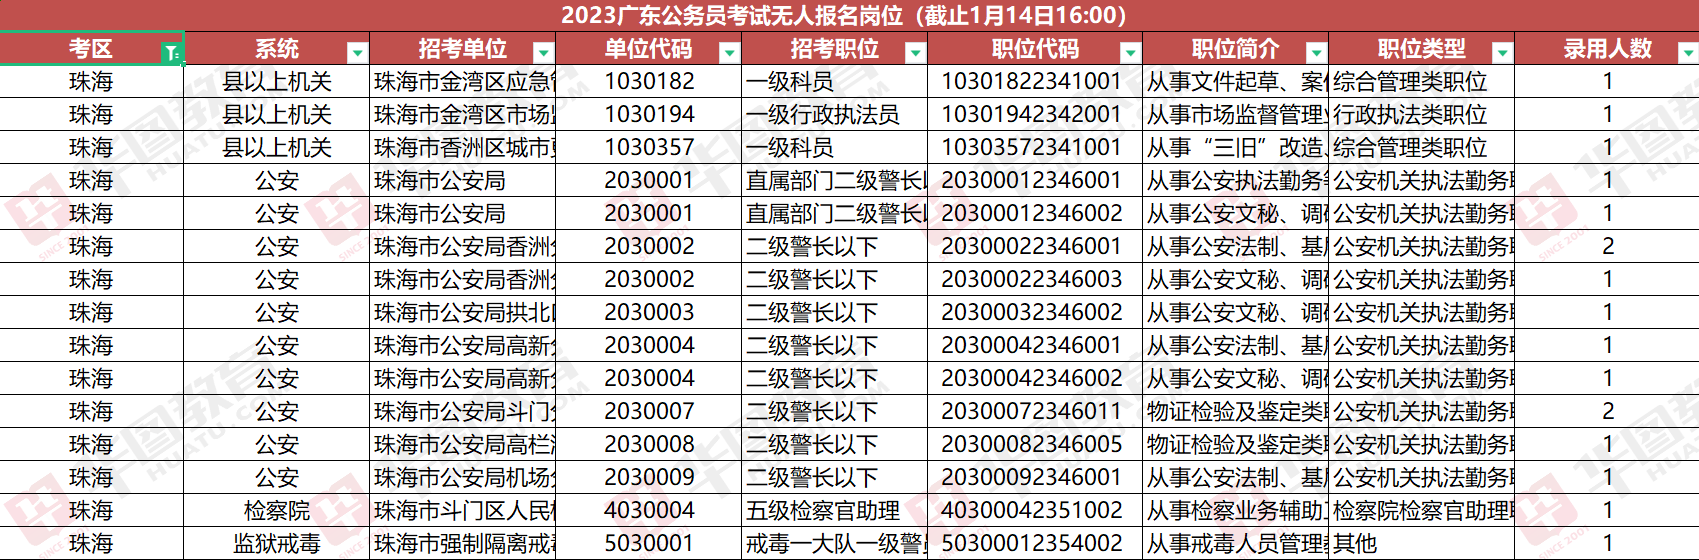 截至14日16时_2023年广东省公务员招录珠海考区报名人数为4173人